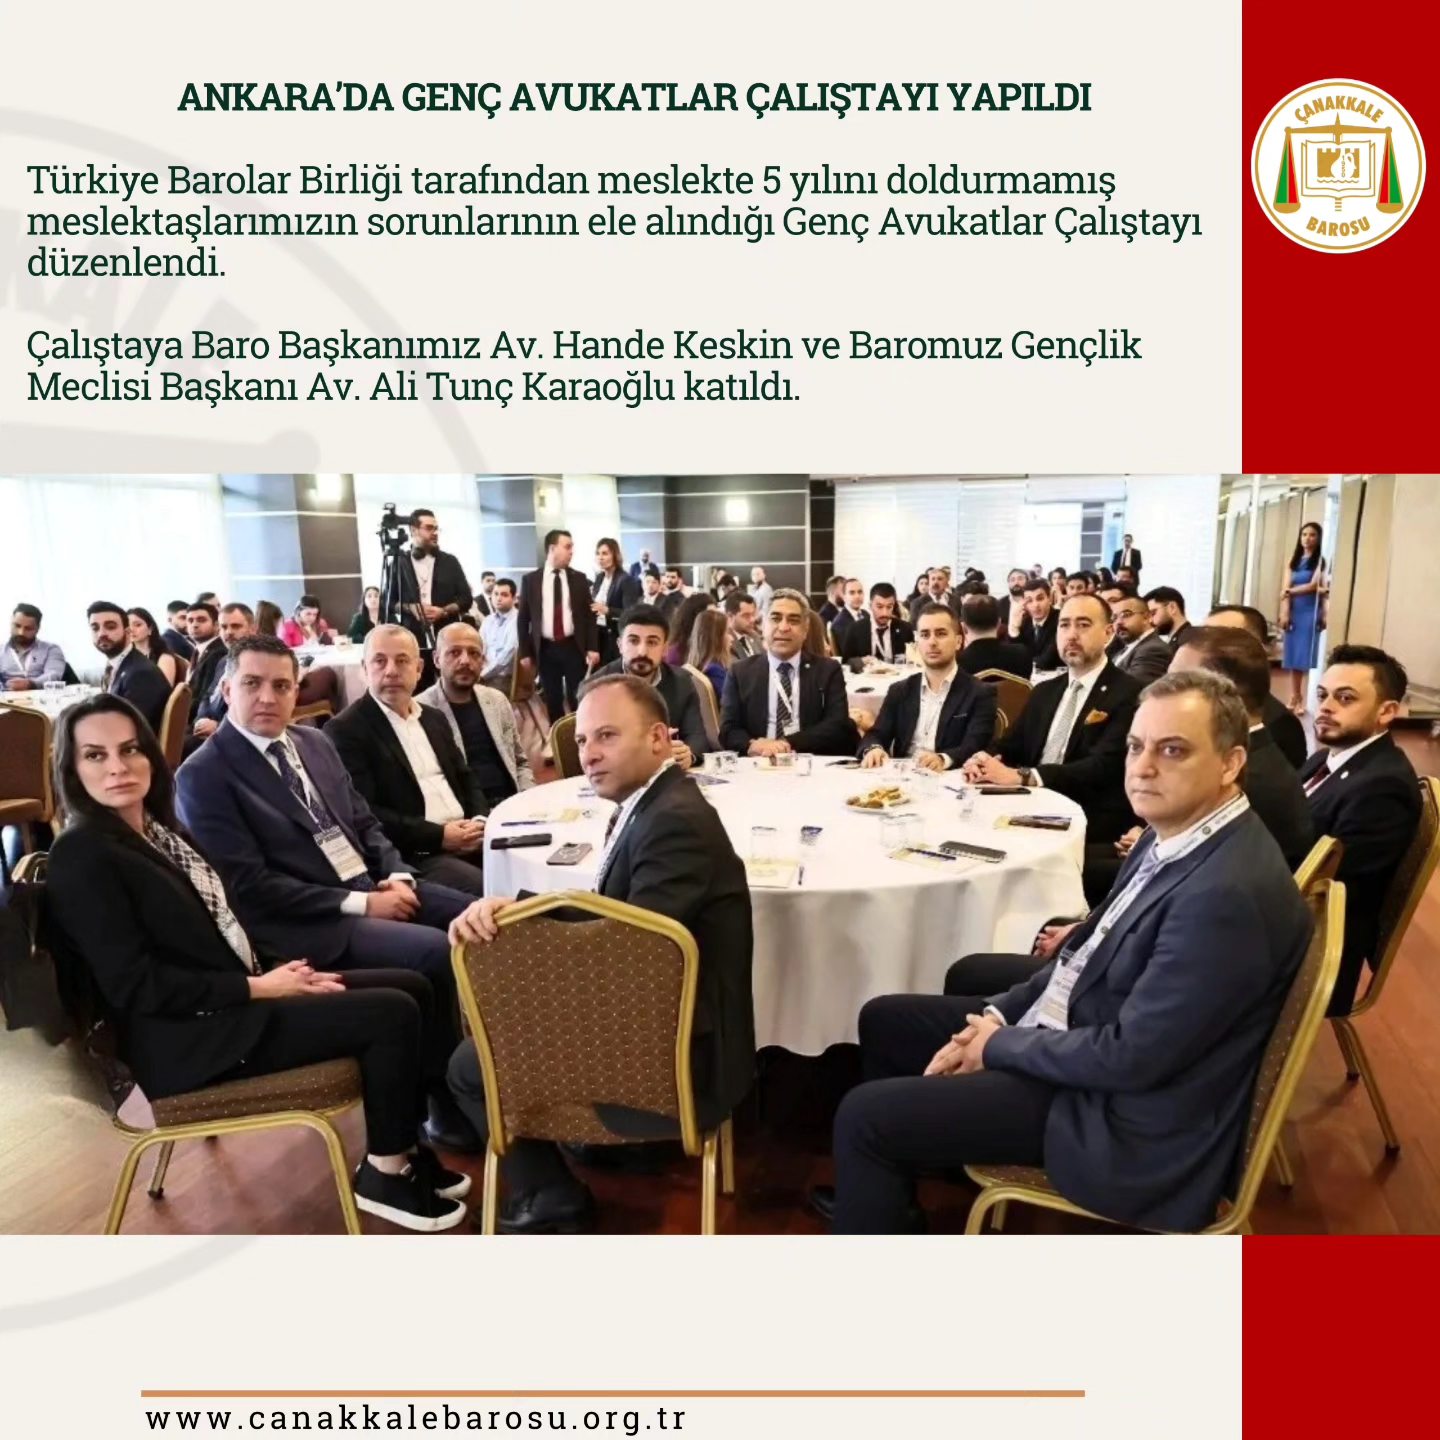 Genç Avukatlar Çalıştayı: Hukuk Camiasında Çözüm Arayışları